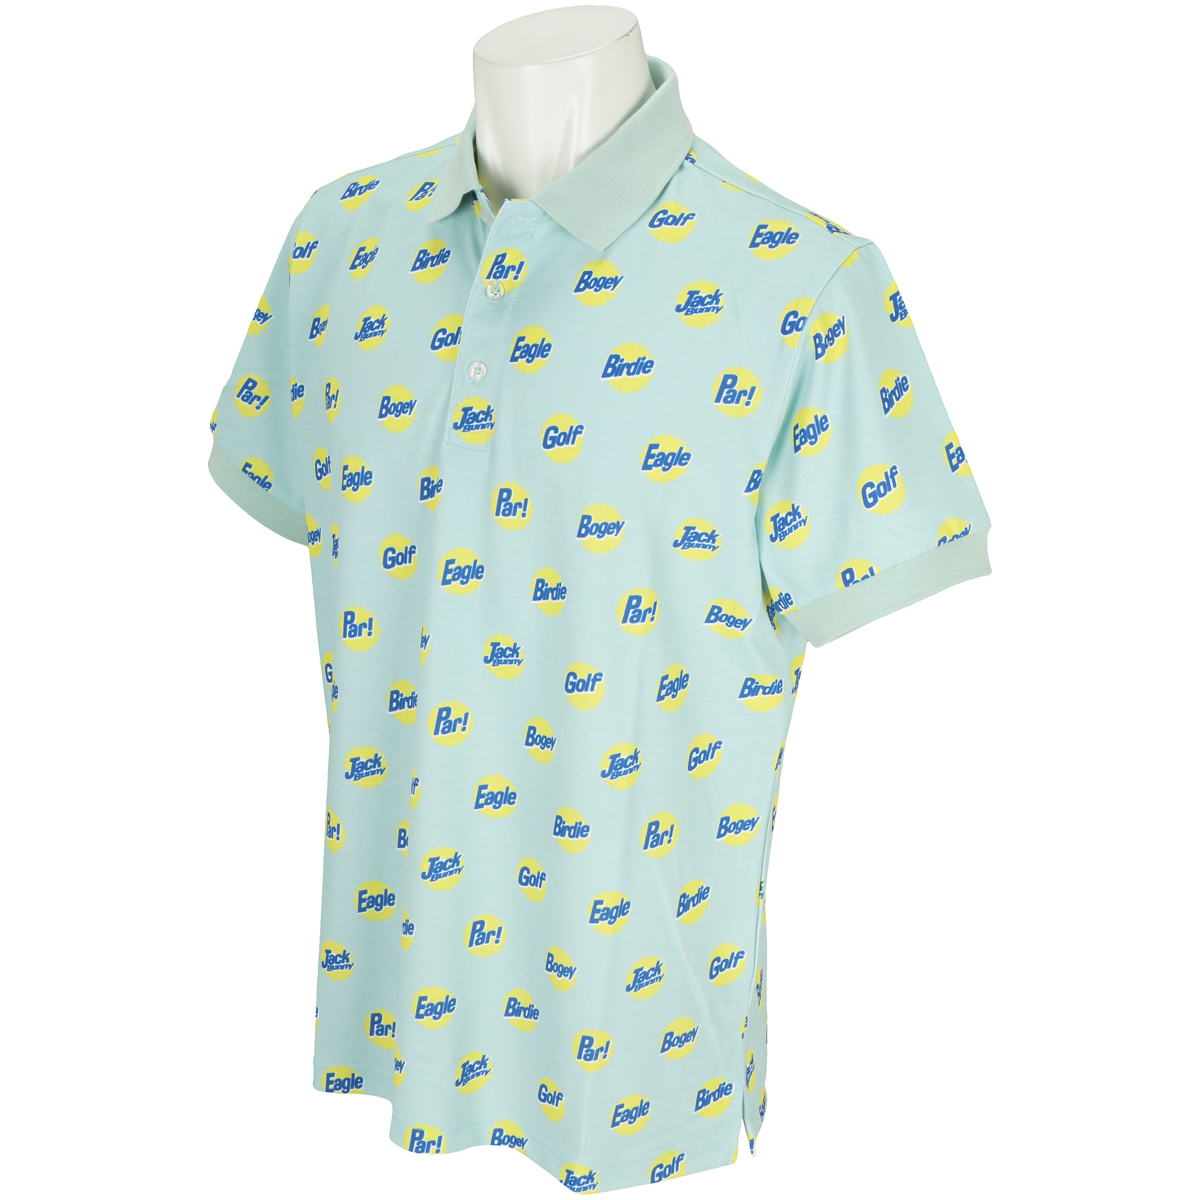  鹿の子ロゴドットプリント半袖ポロシャツ 